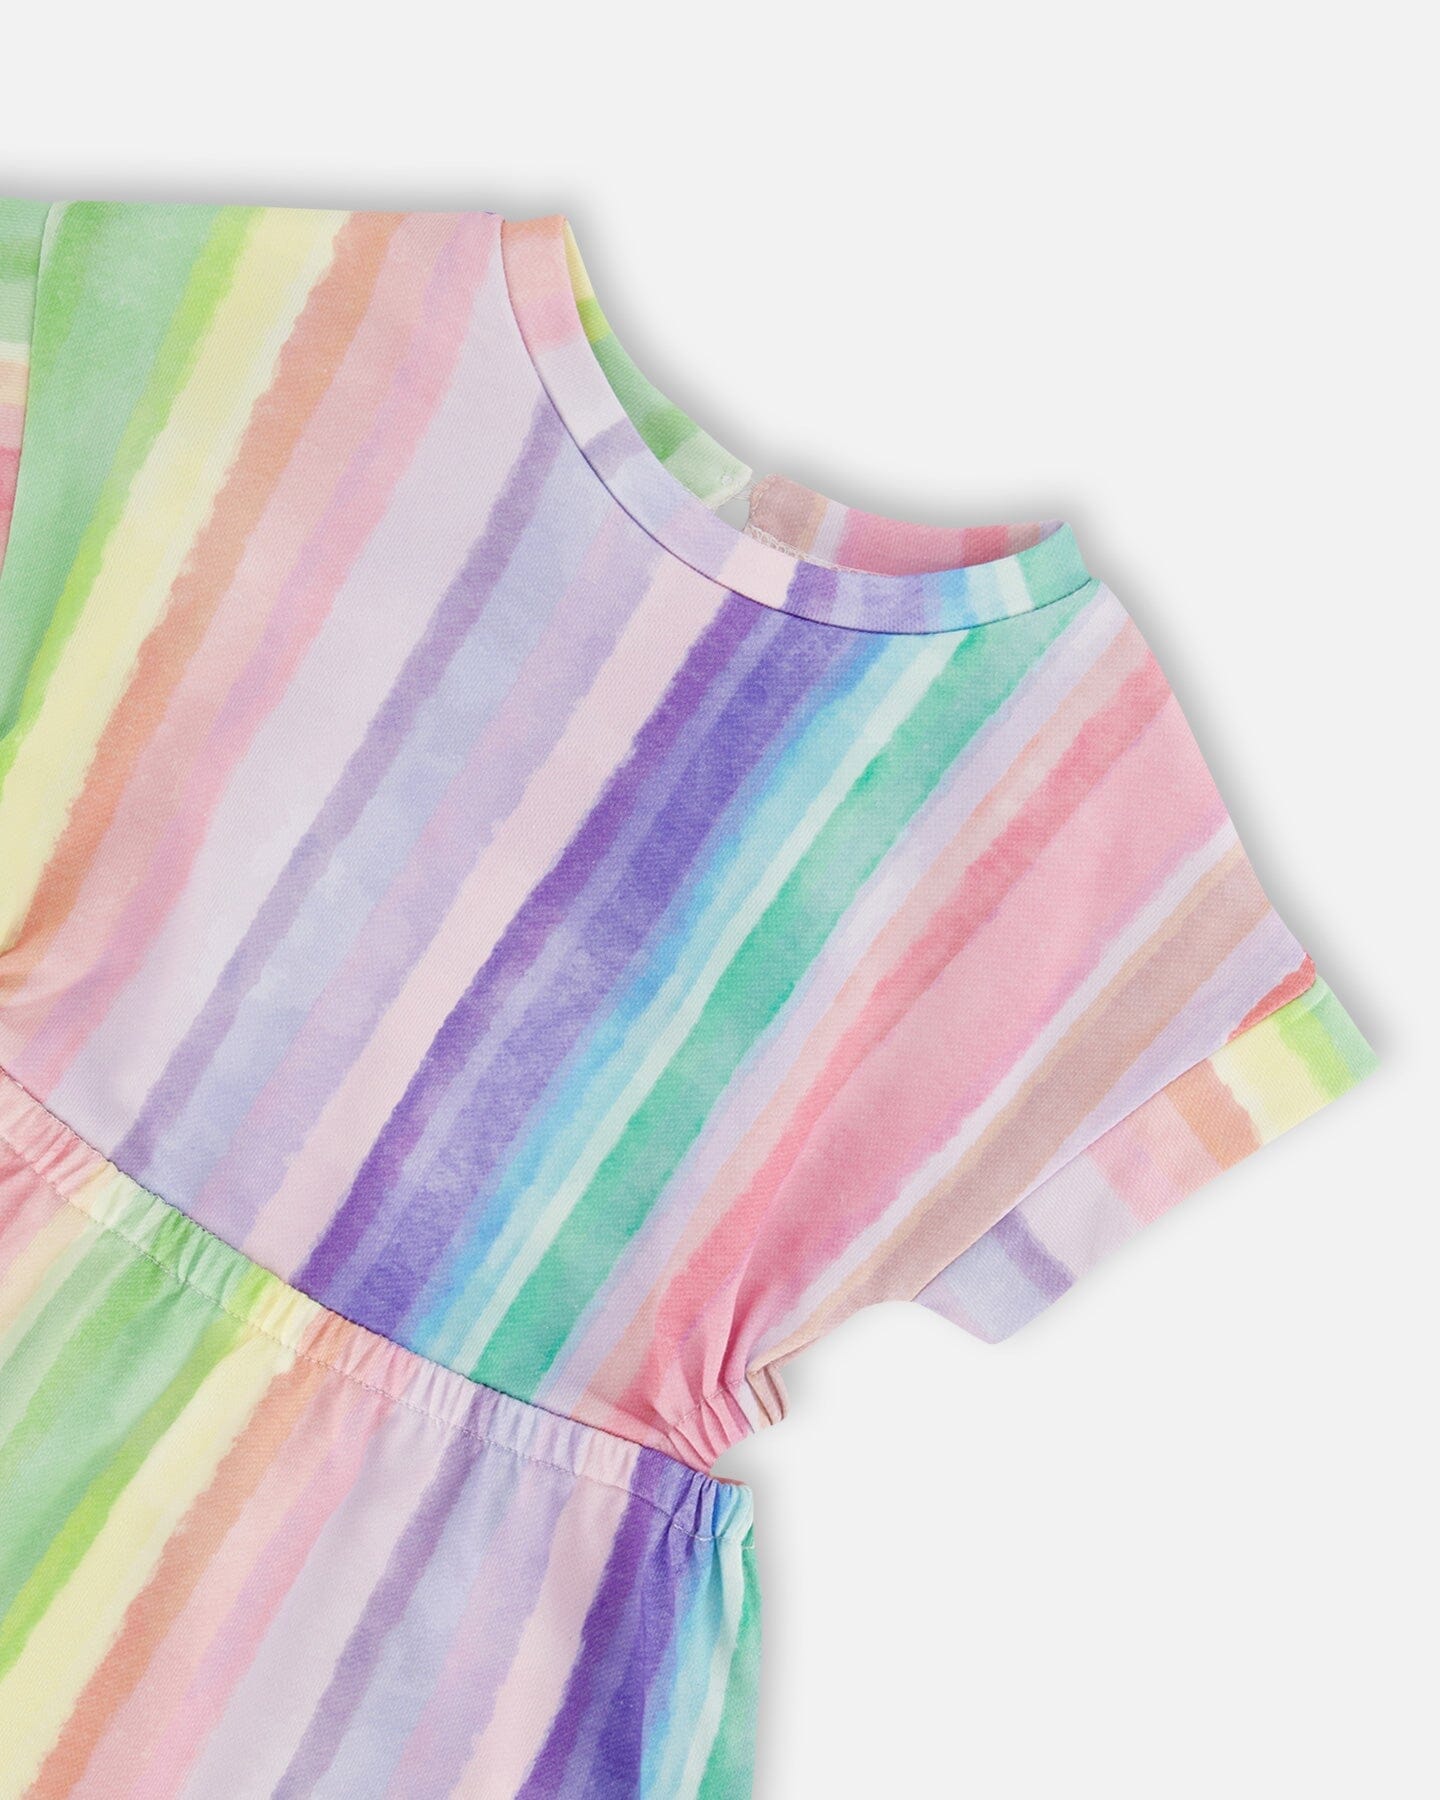 French Terry Dress Rainbow Stripe - F30G87_088